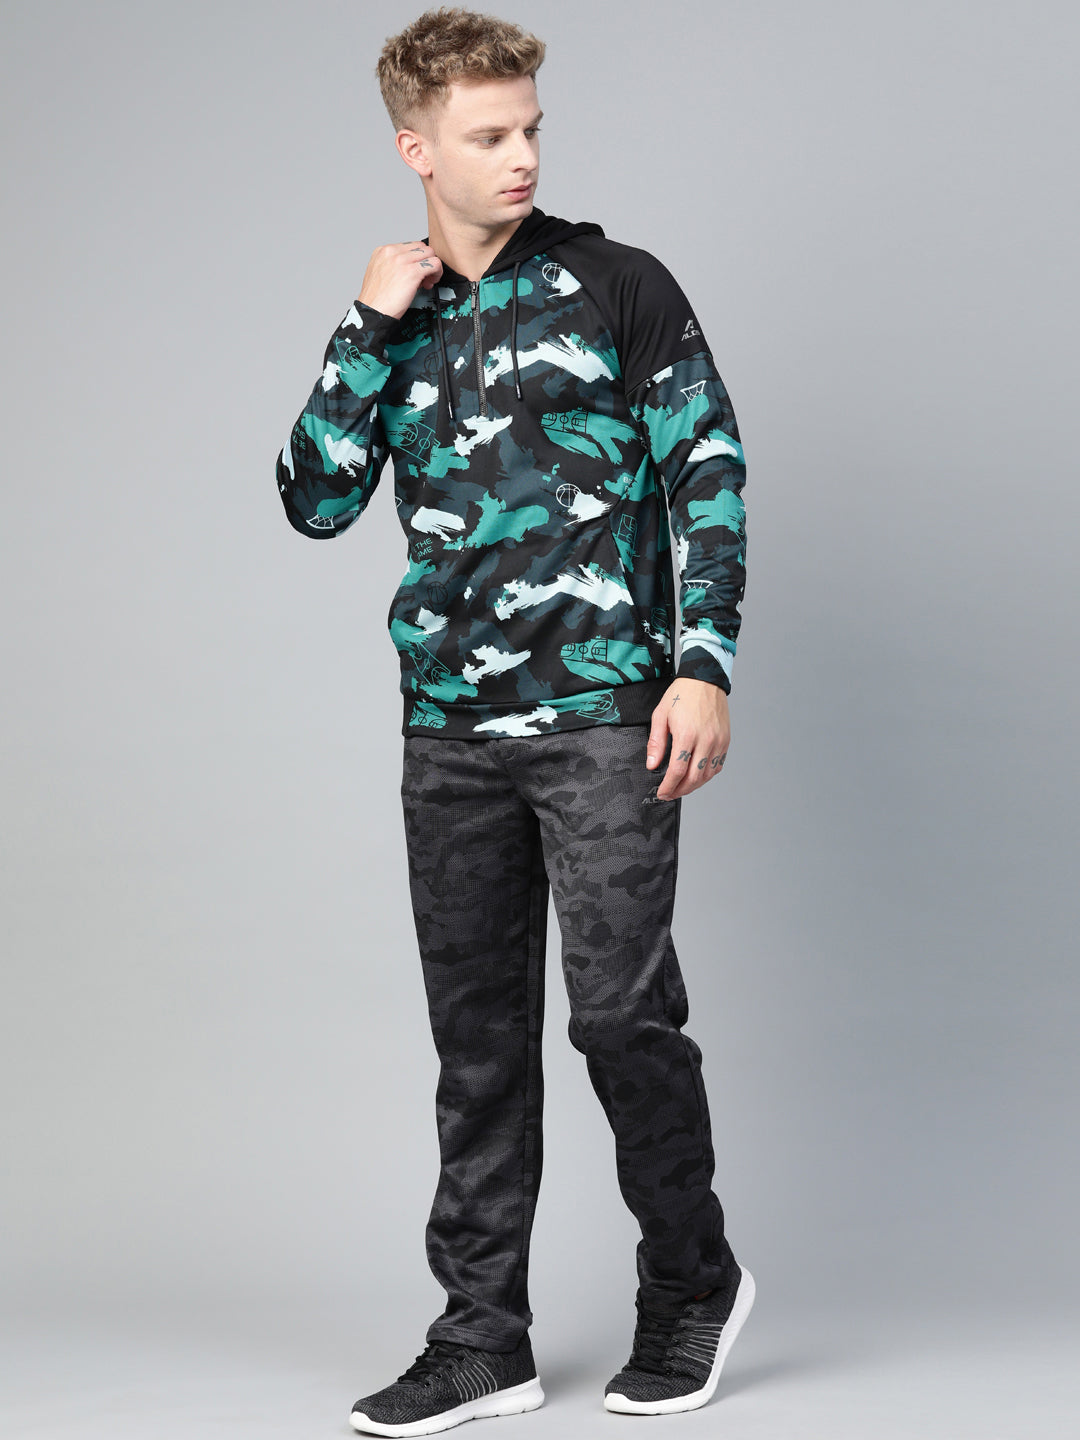 Alcis Men Navy Blue  Black Camouflage Printed Hooded Sweatshirt